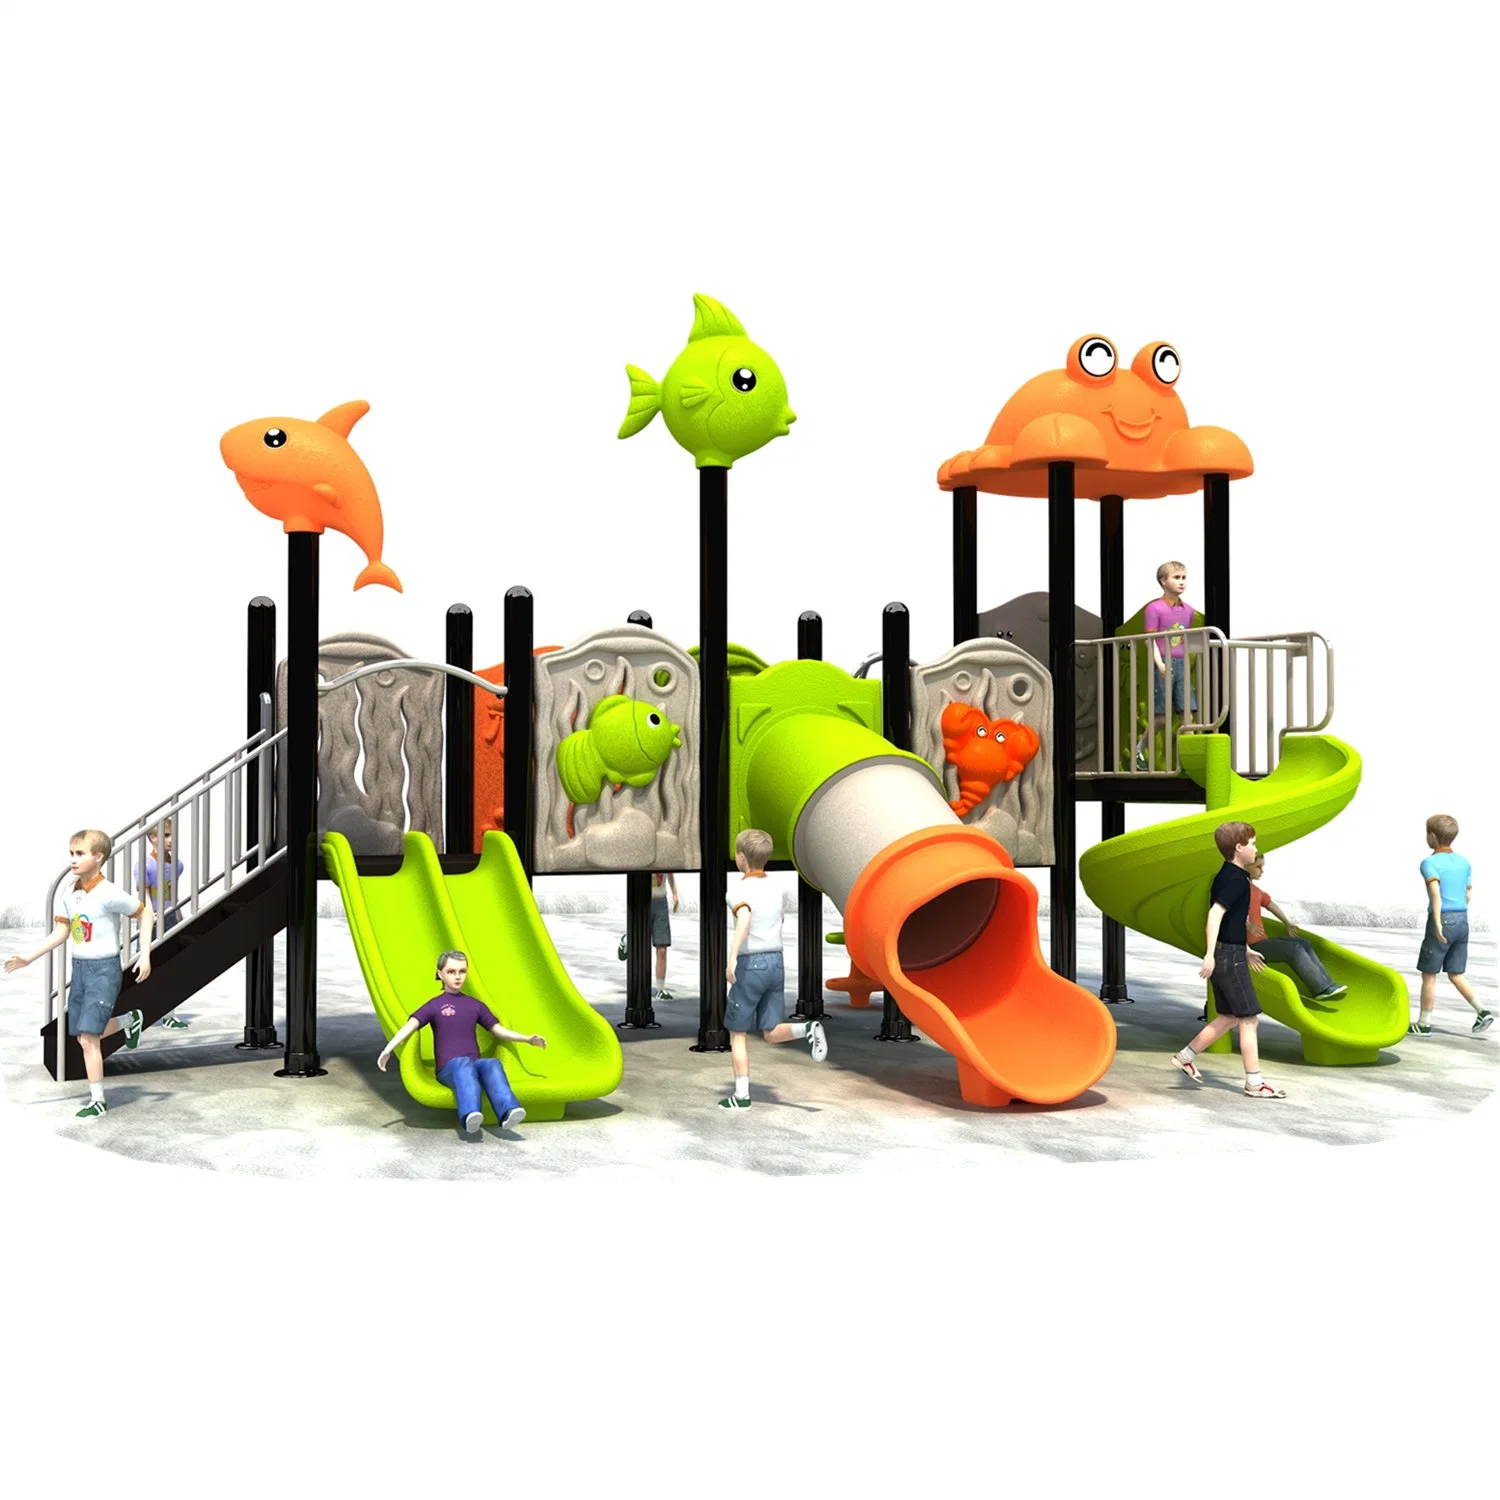 Kinderspielplatz große Plastikrutsche Spielzeug im Freien Spielgeräte